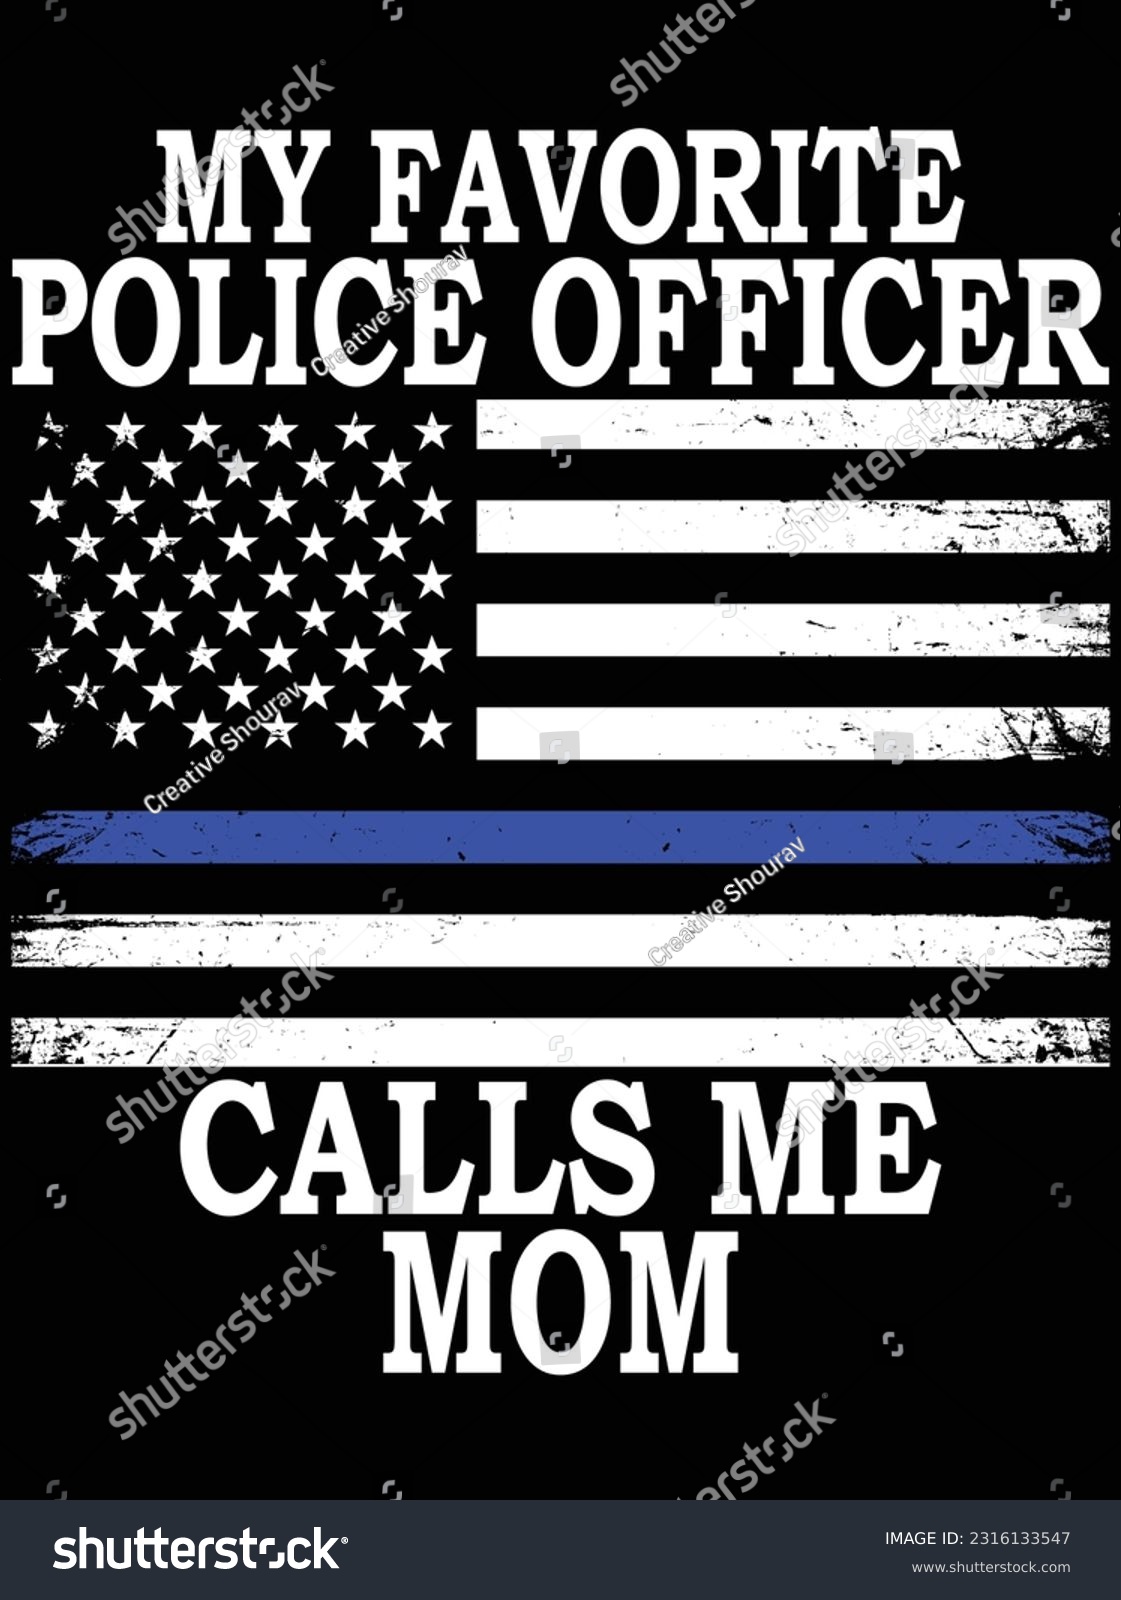 SVG of My favorite police officer calls me mom vector art design, eps file. design file for t-shirt. SVG, EPS cuttable design file svg